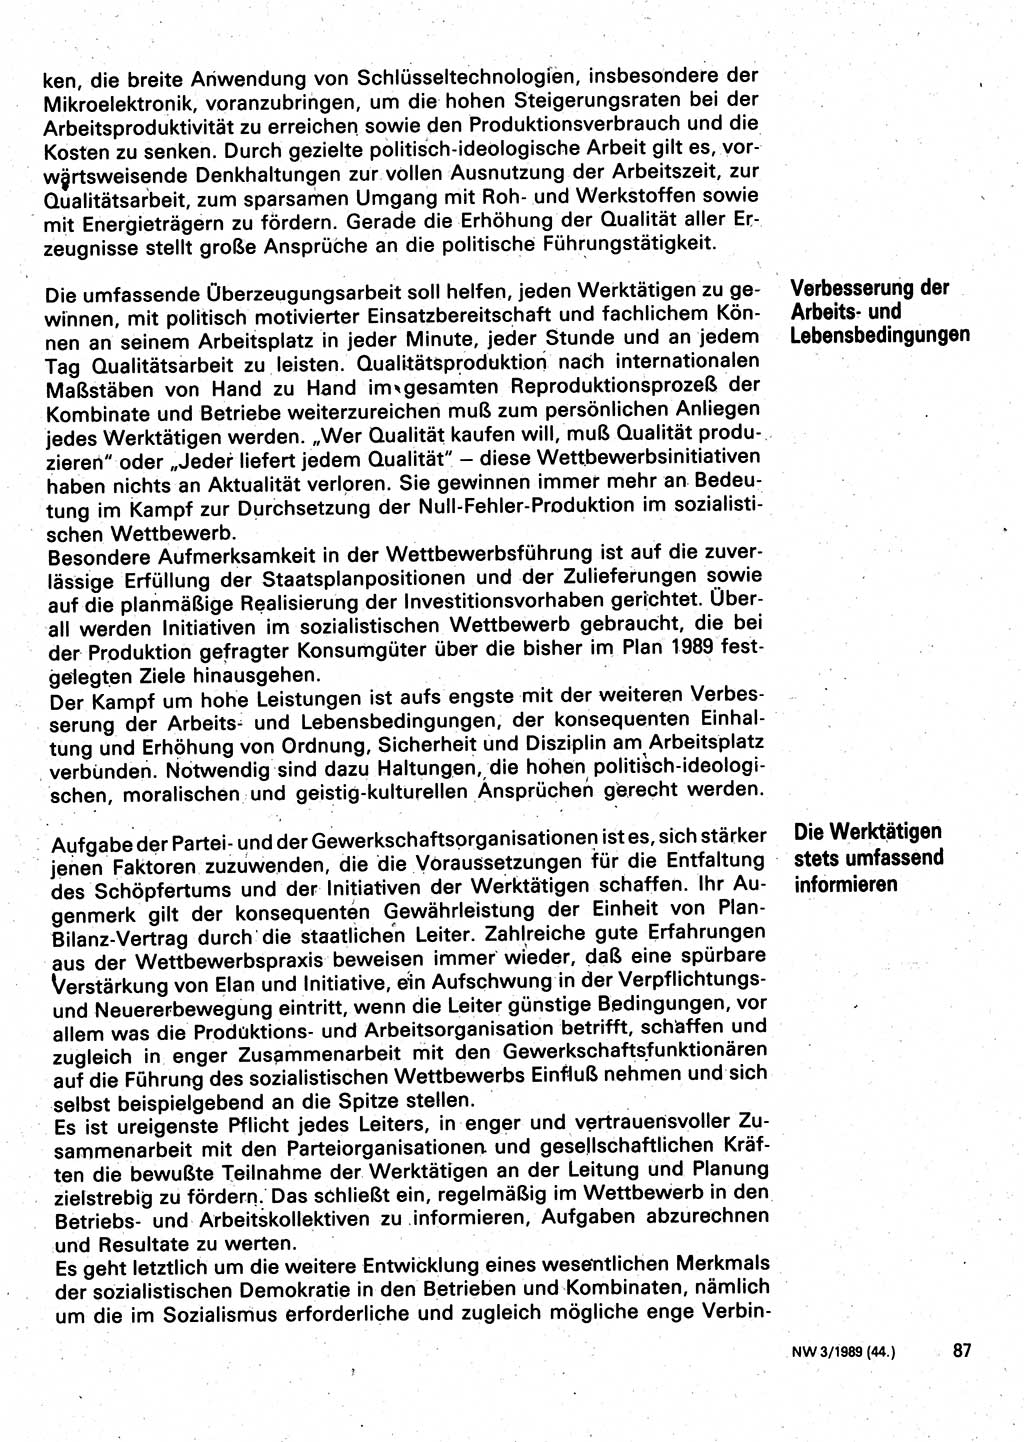 Neuer Weg (NW), Organ des Zentralkomitees (ZK) der SED (Sozialistische Einheitspartei Deutschlands) für Fragen des Parteilebens, 44. Jahrgang [Deutsche Demokratische Republik (DDR)] 1989, Seite 87 (NW ZK SED DDR 1989, S. 87)